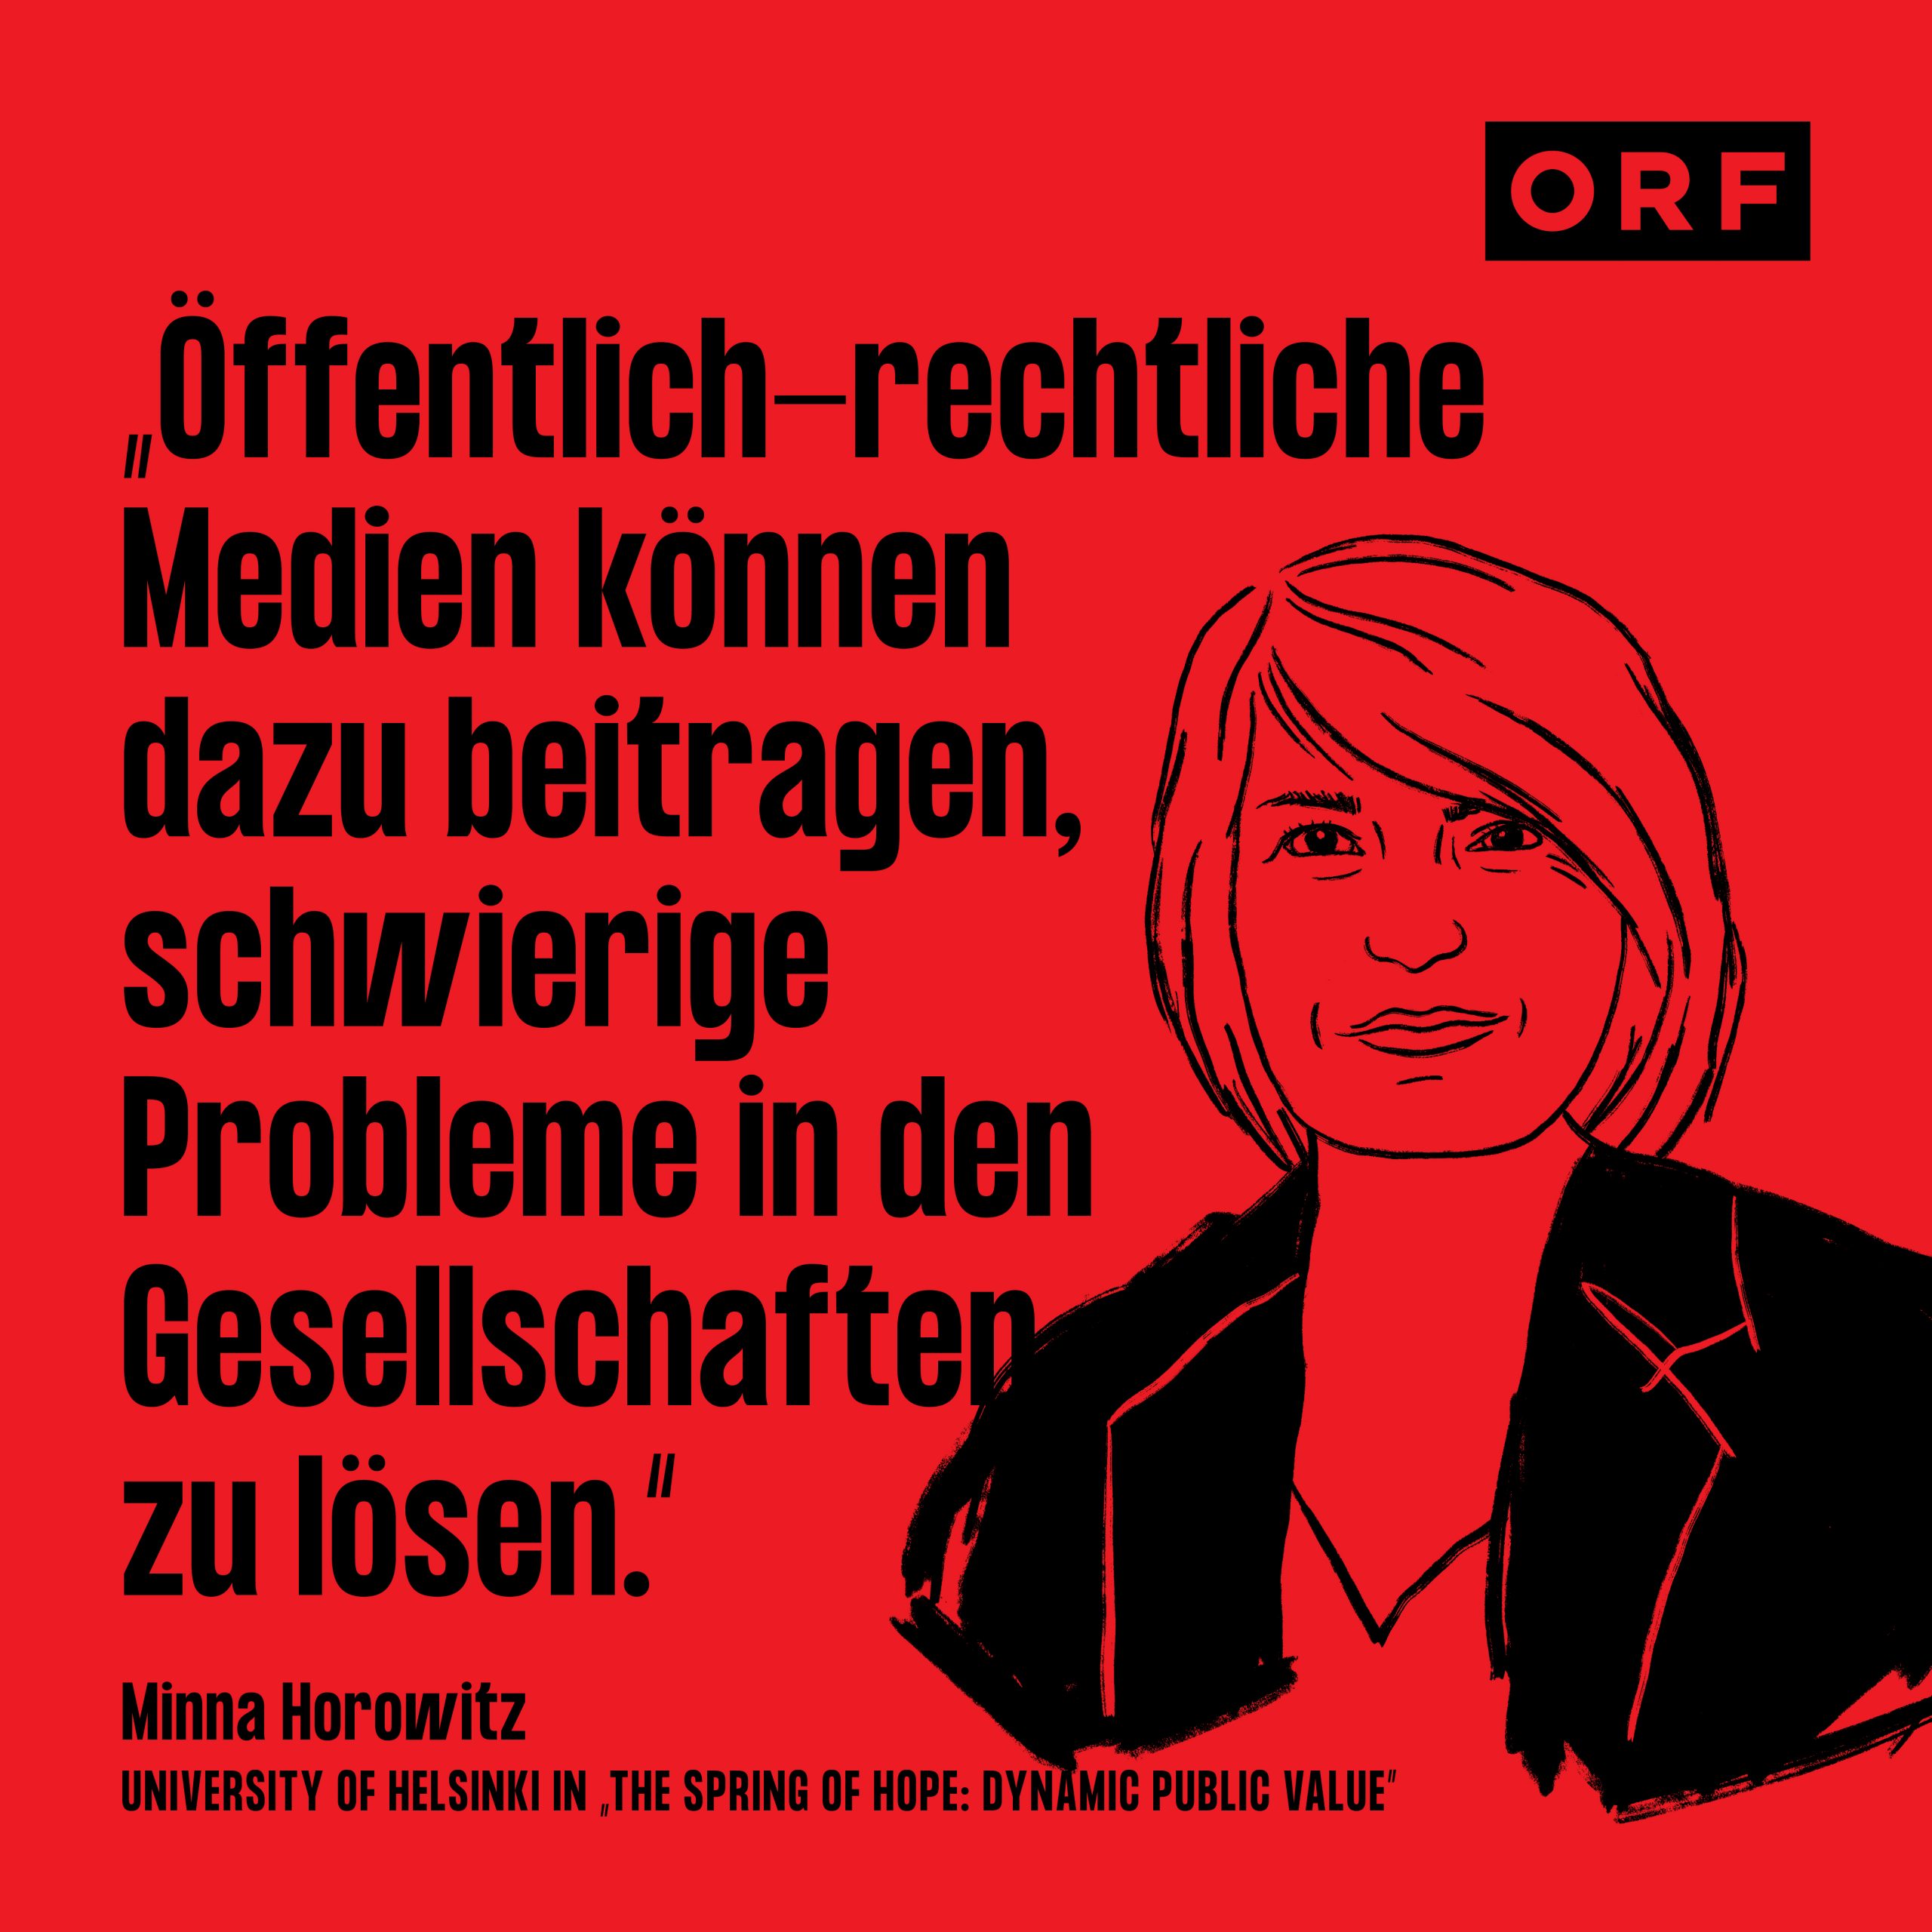 ORF-Public-Value-Social-Media-2110046